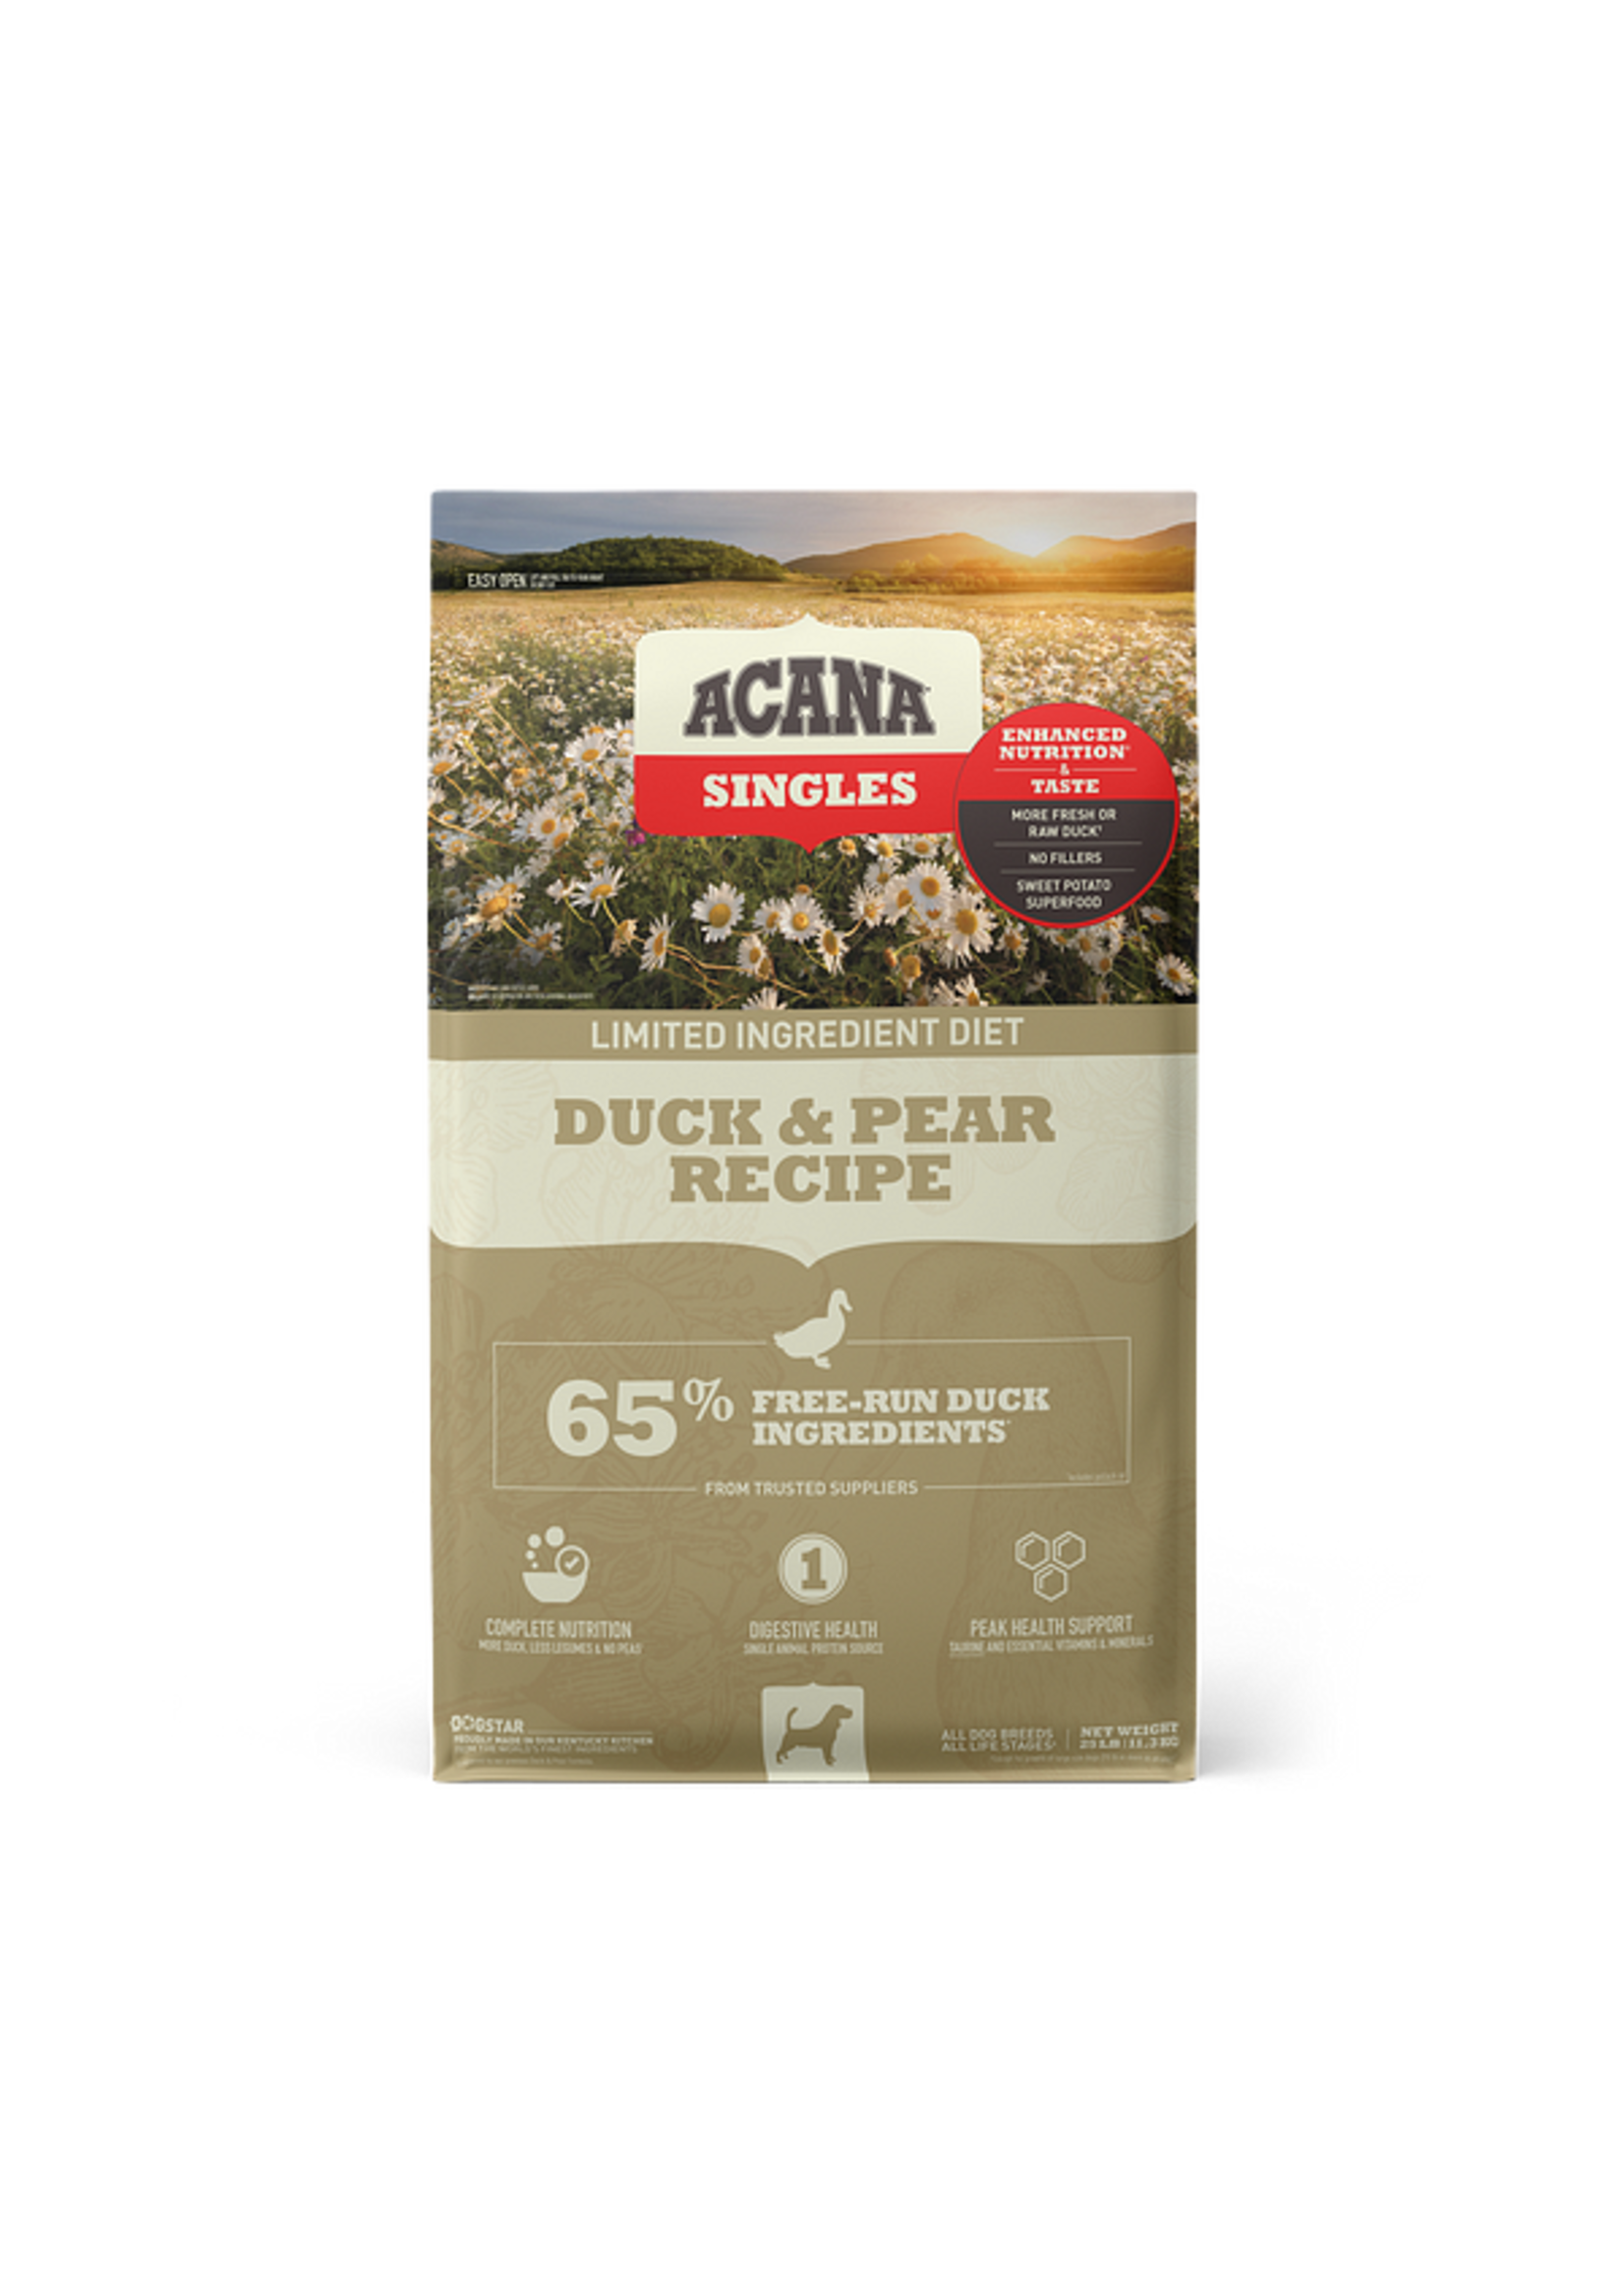 Acana Acana Singles Duck & Pear Dog Food